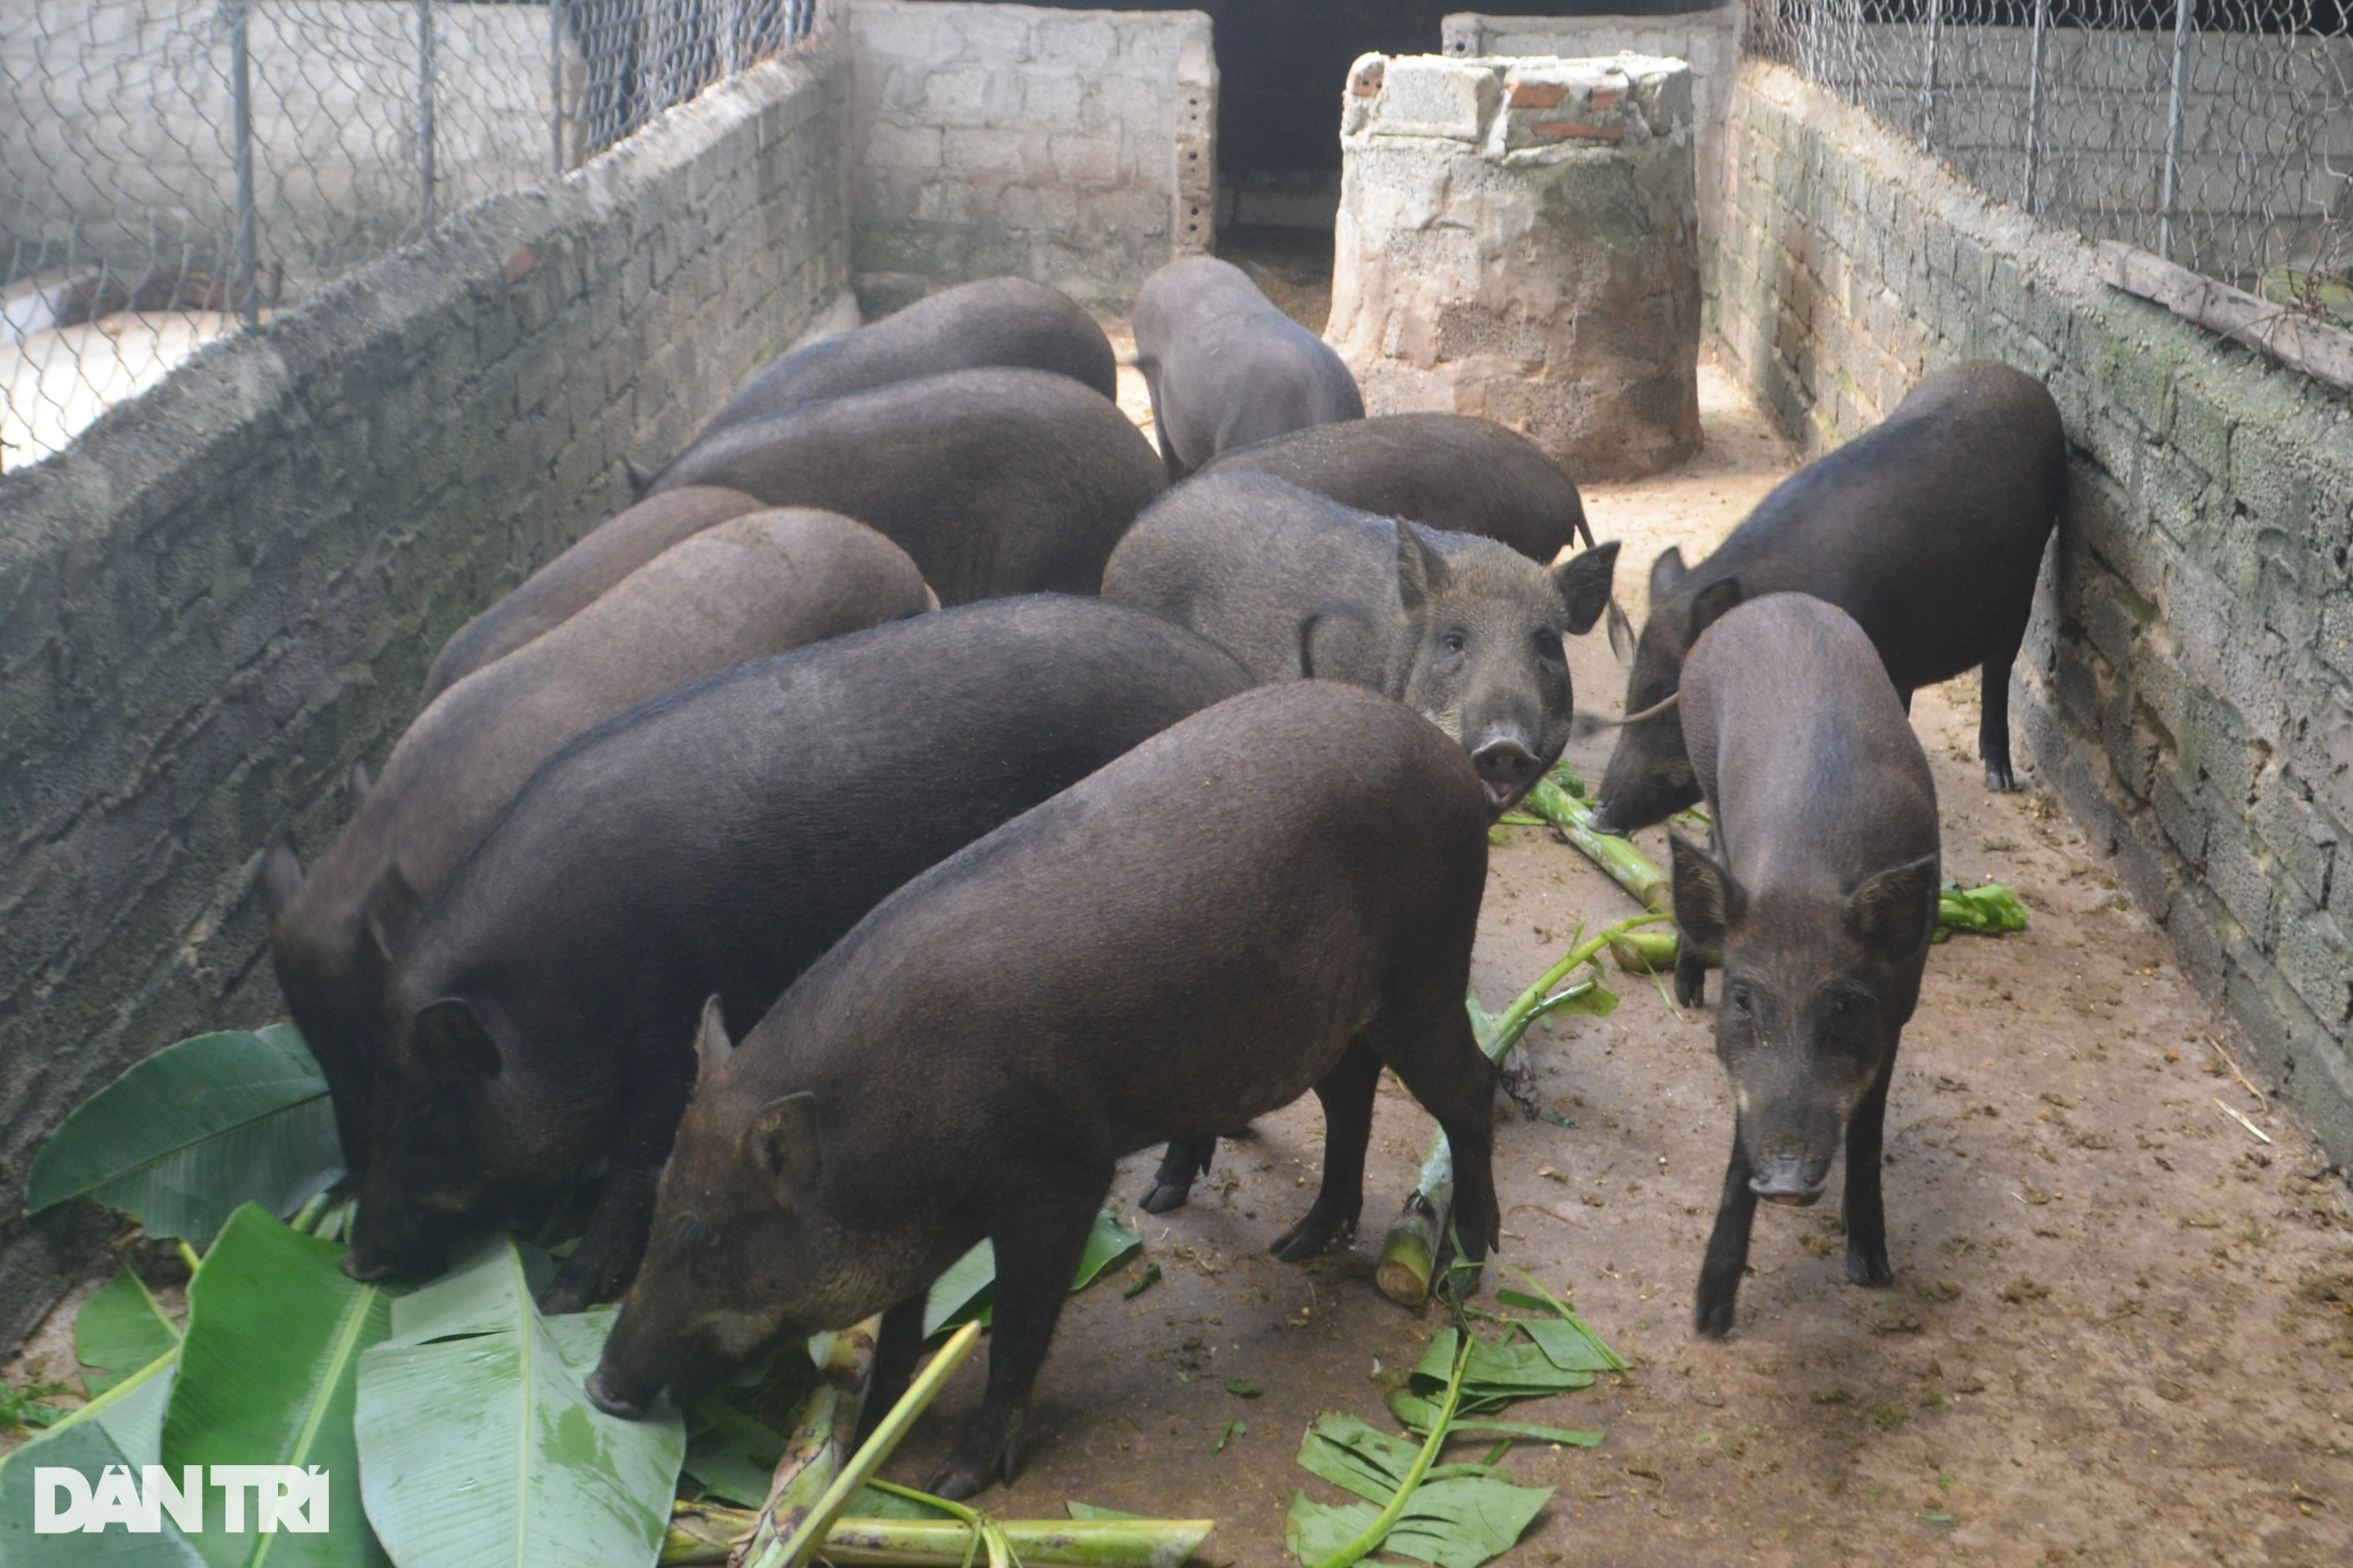 Vỗ lợn rừng bằng chè khổng lồ, lãi hàng trăm triệu đồng mỗi năm - 4